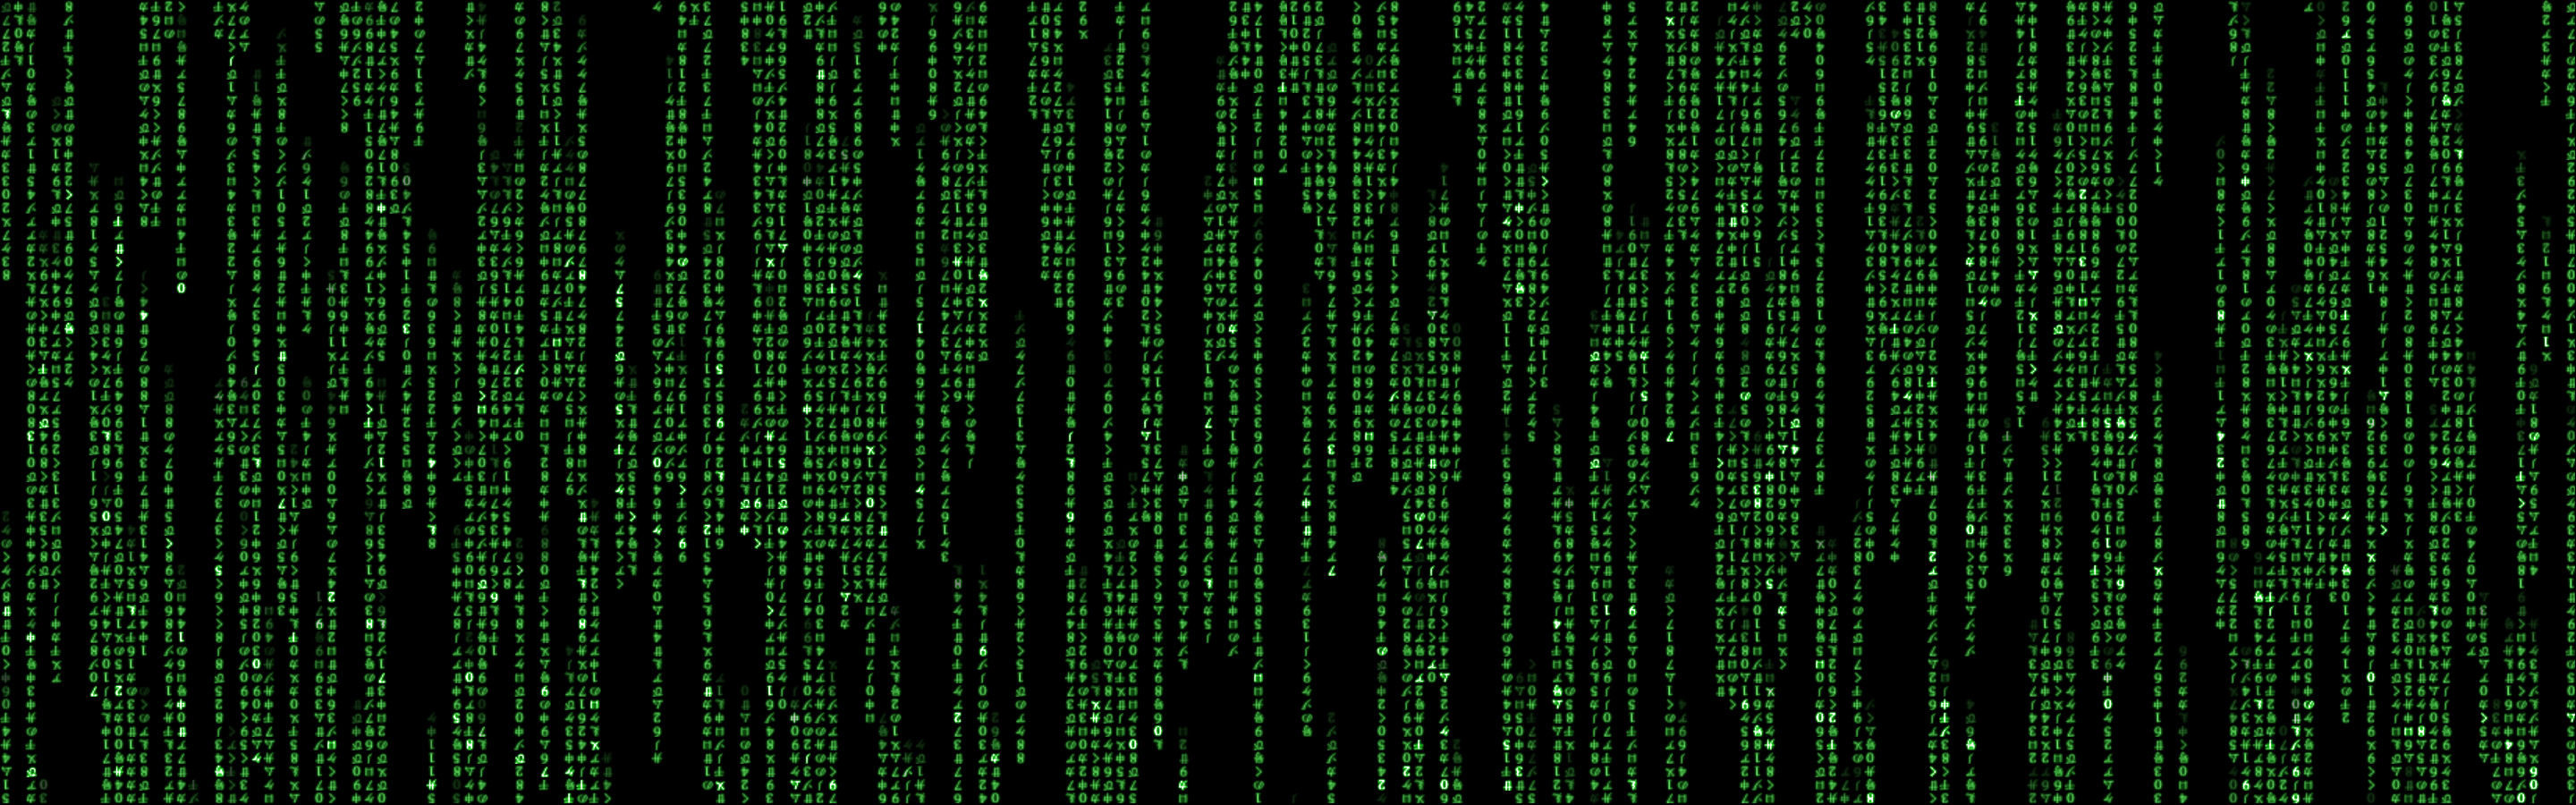 Matrix Code Wallpaper